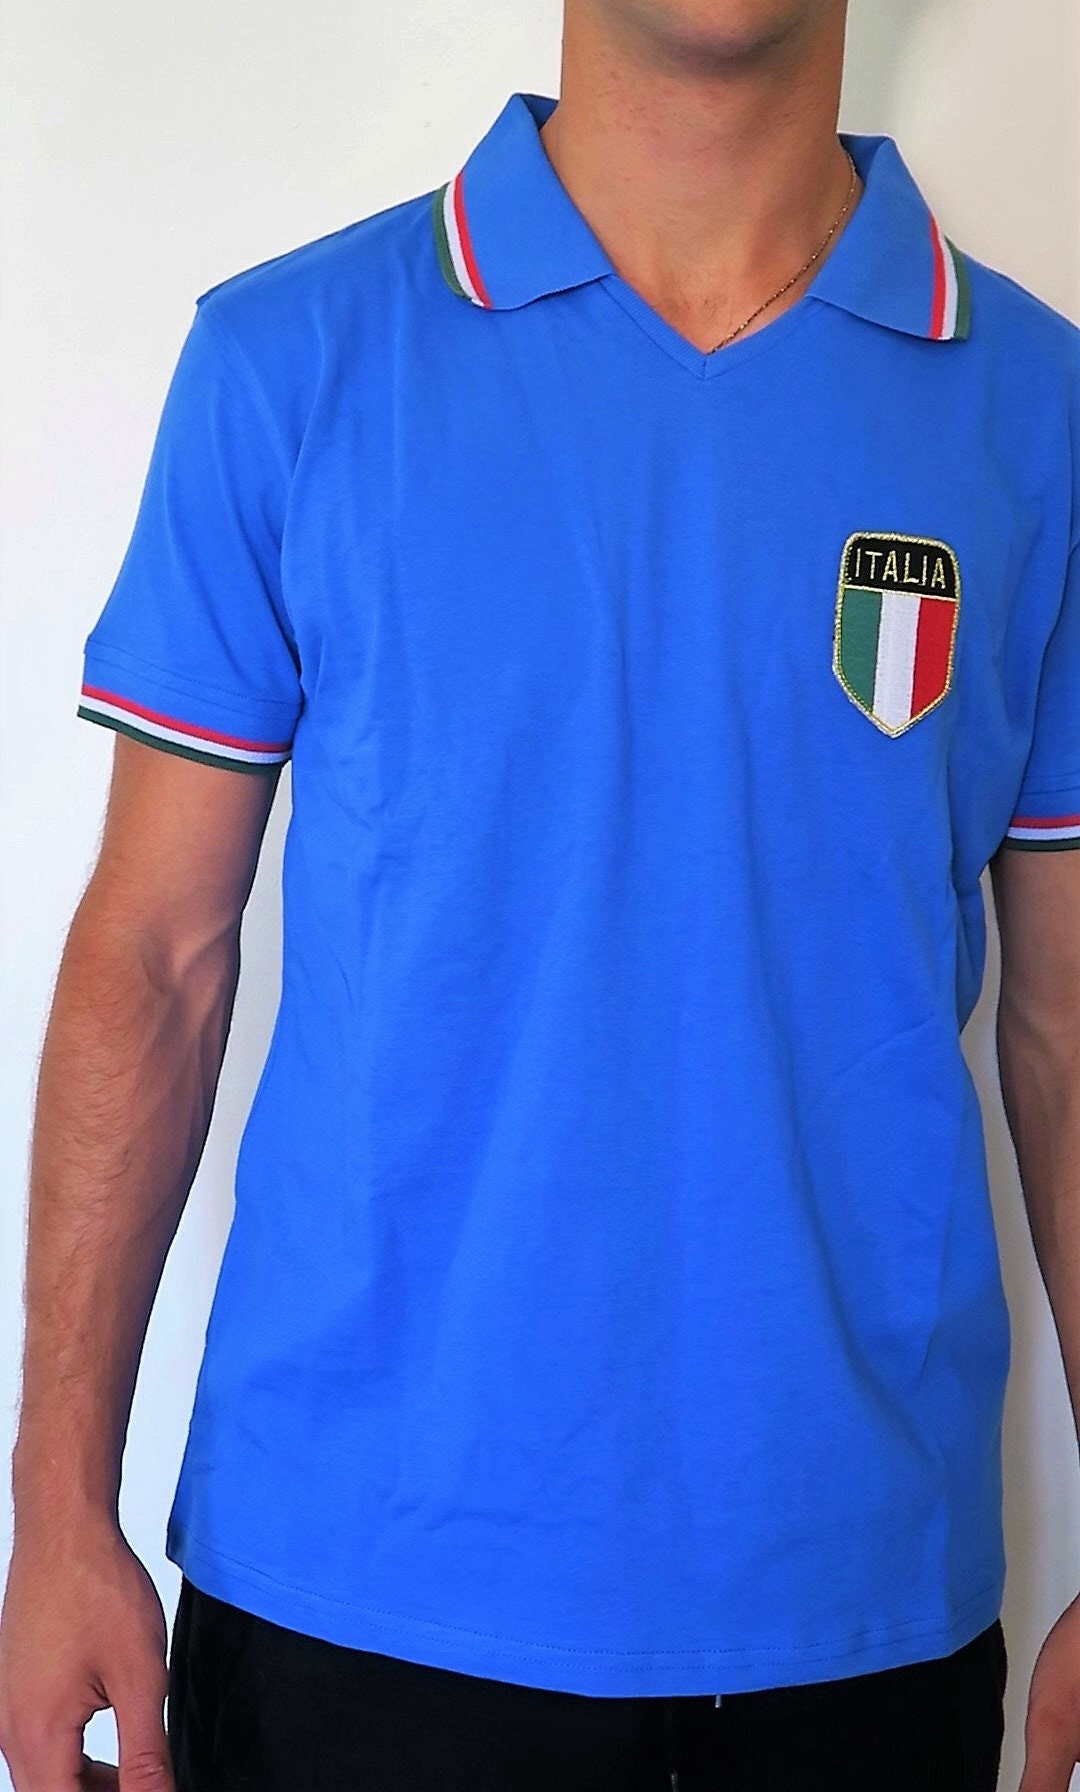 Camiseta de Italia 1982 Campeones del Mundo Réplica de - Etsy México